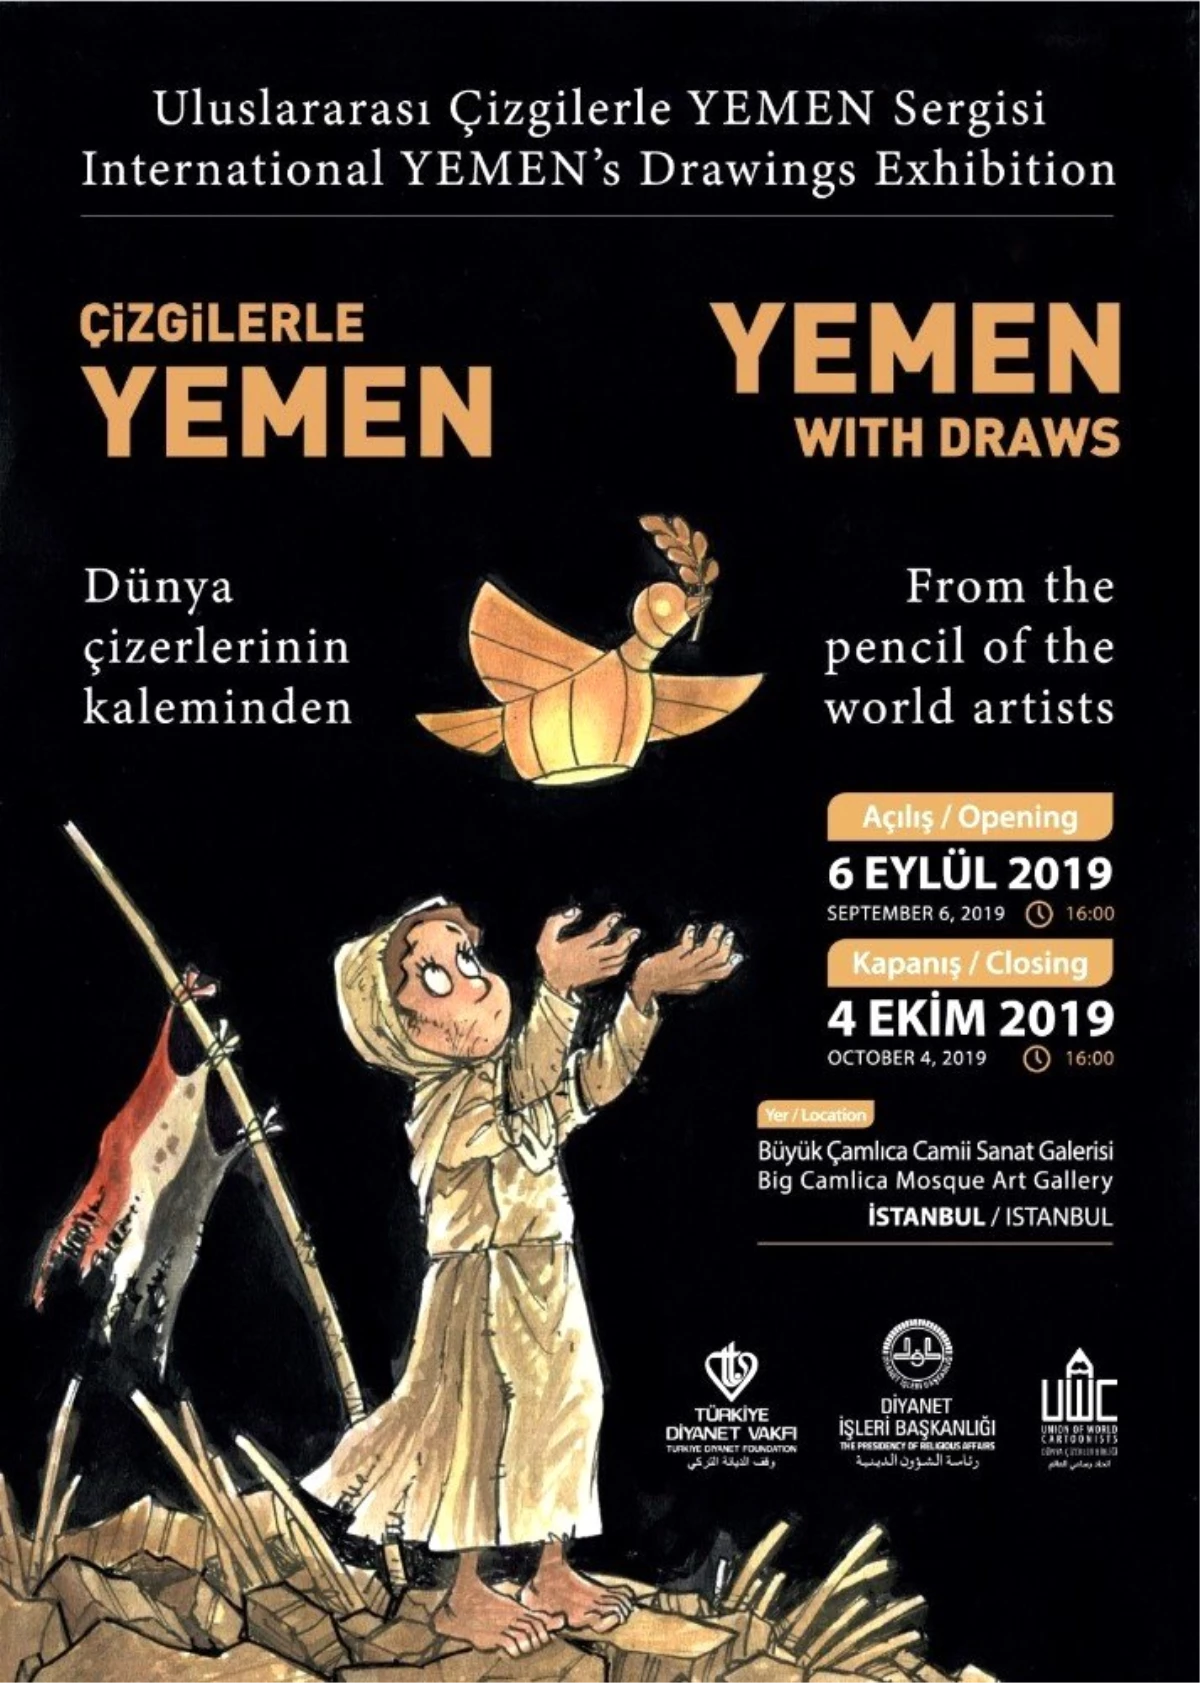 Türkiye Diyanet Vakfından "Uluslararası Çizgilerle Yemen" sergisi